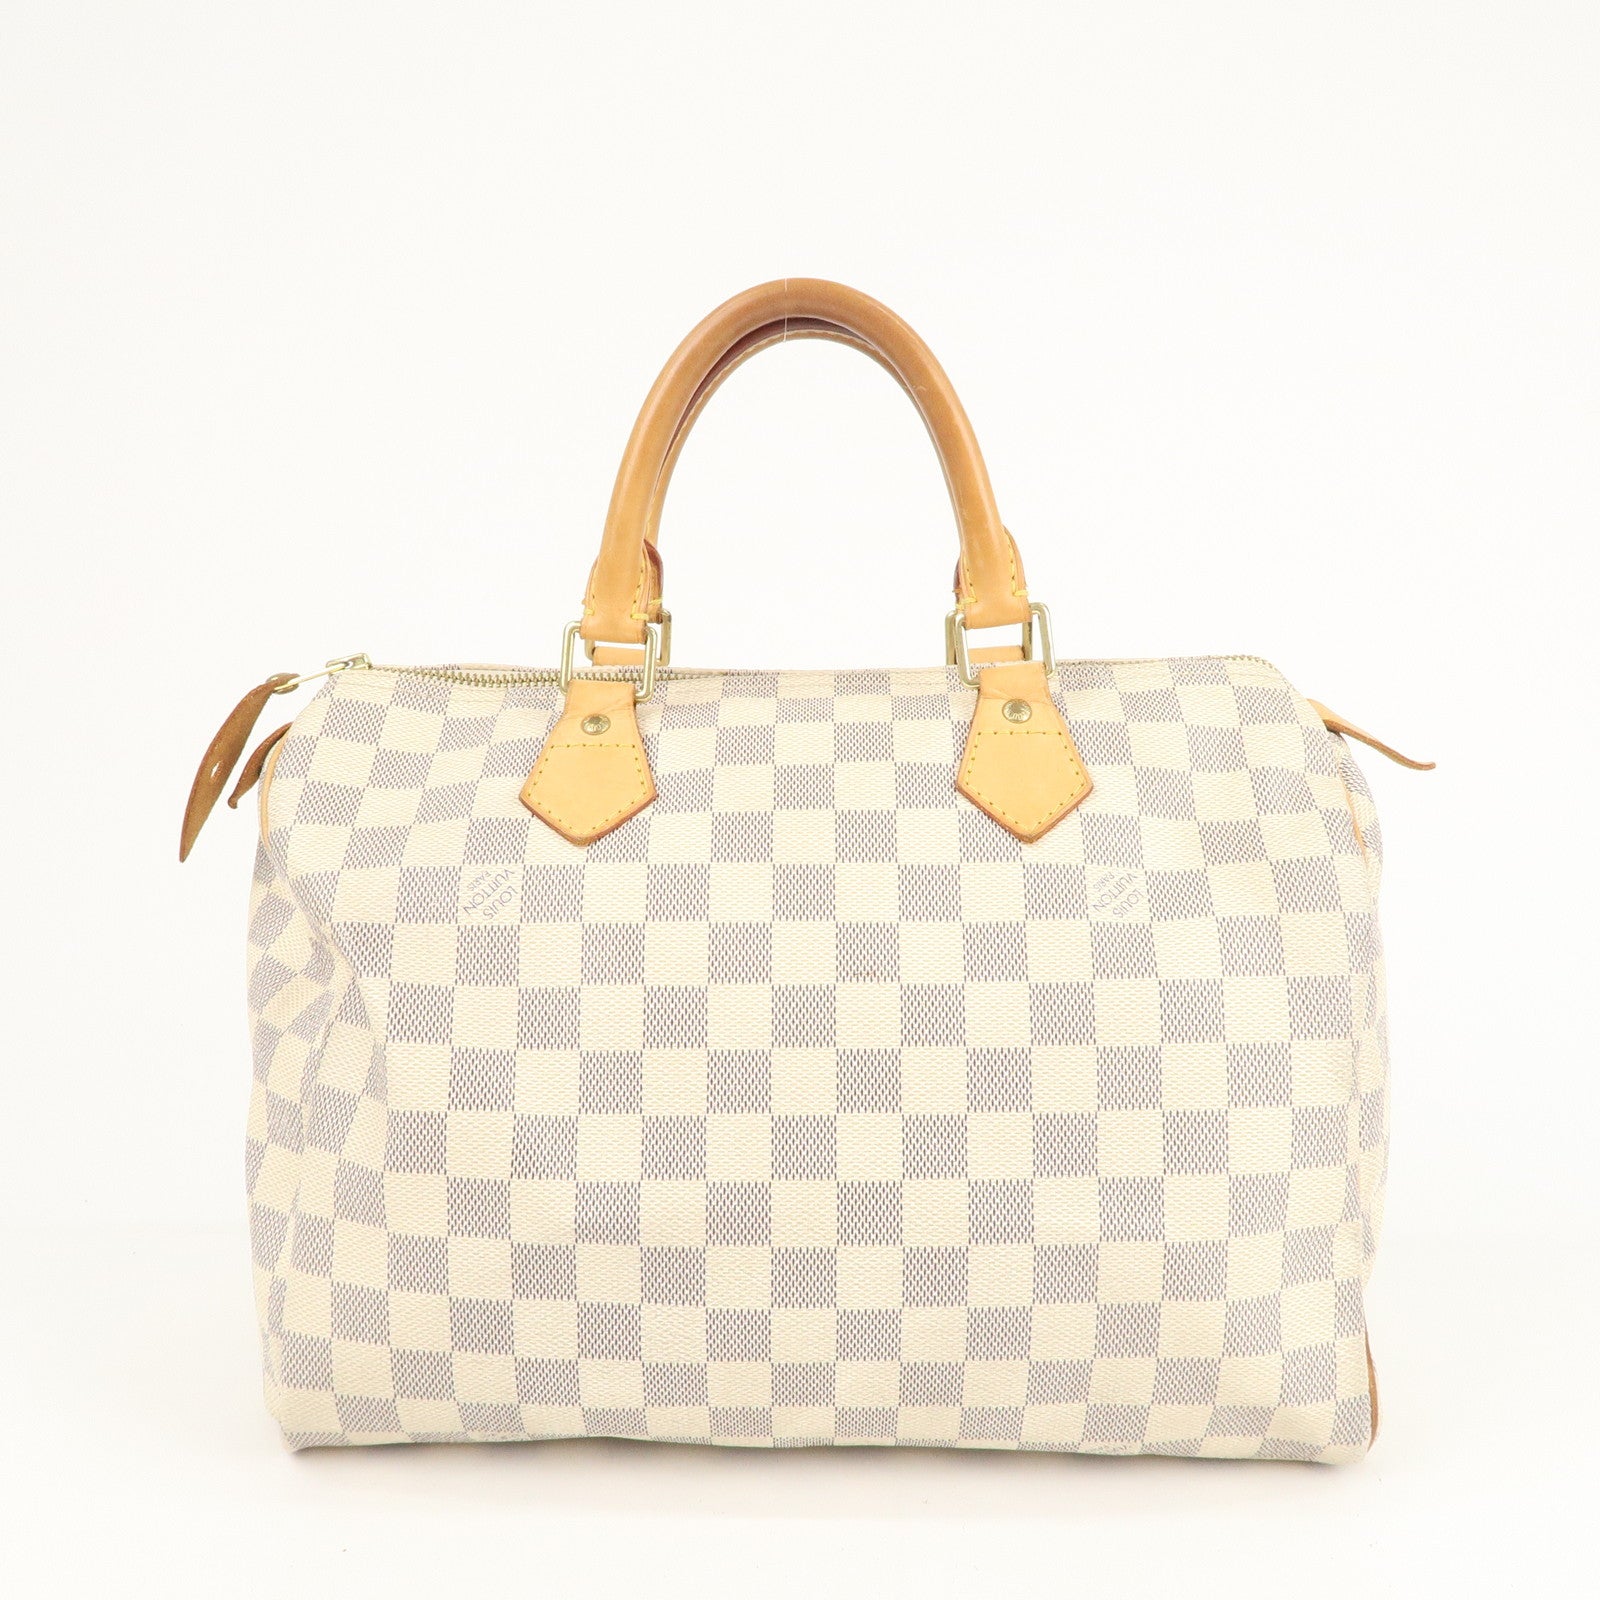 Louis Vuitton, Bags, Louis Vuitton Speedy 3 Handbag